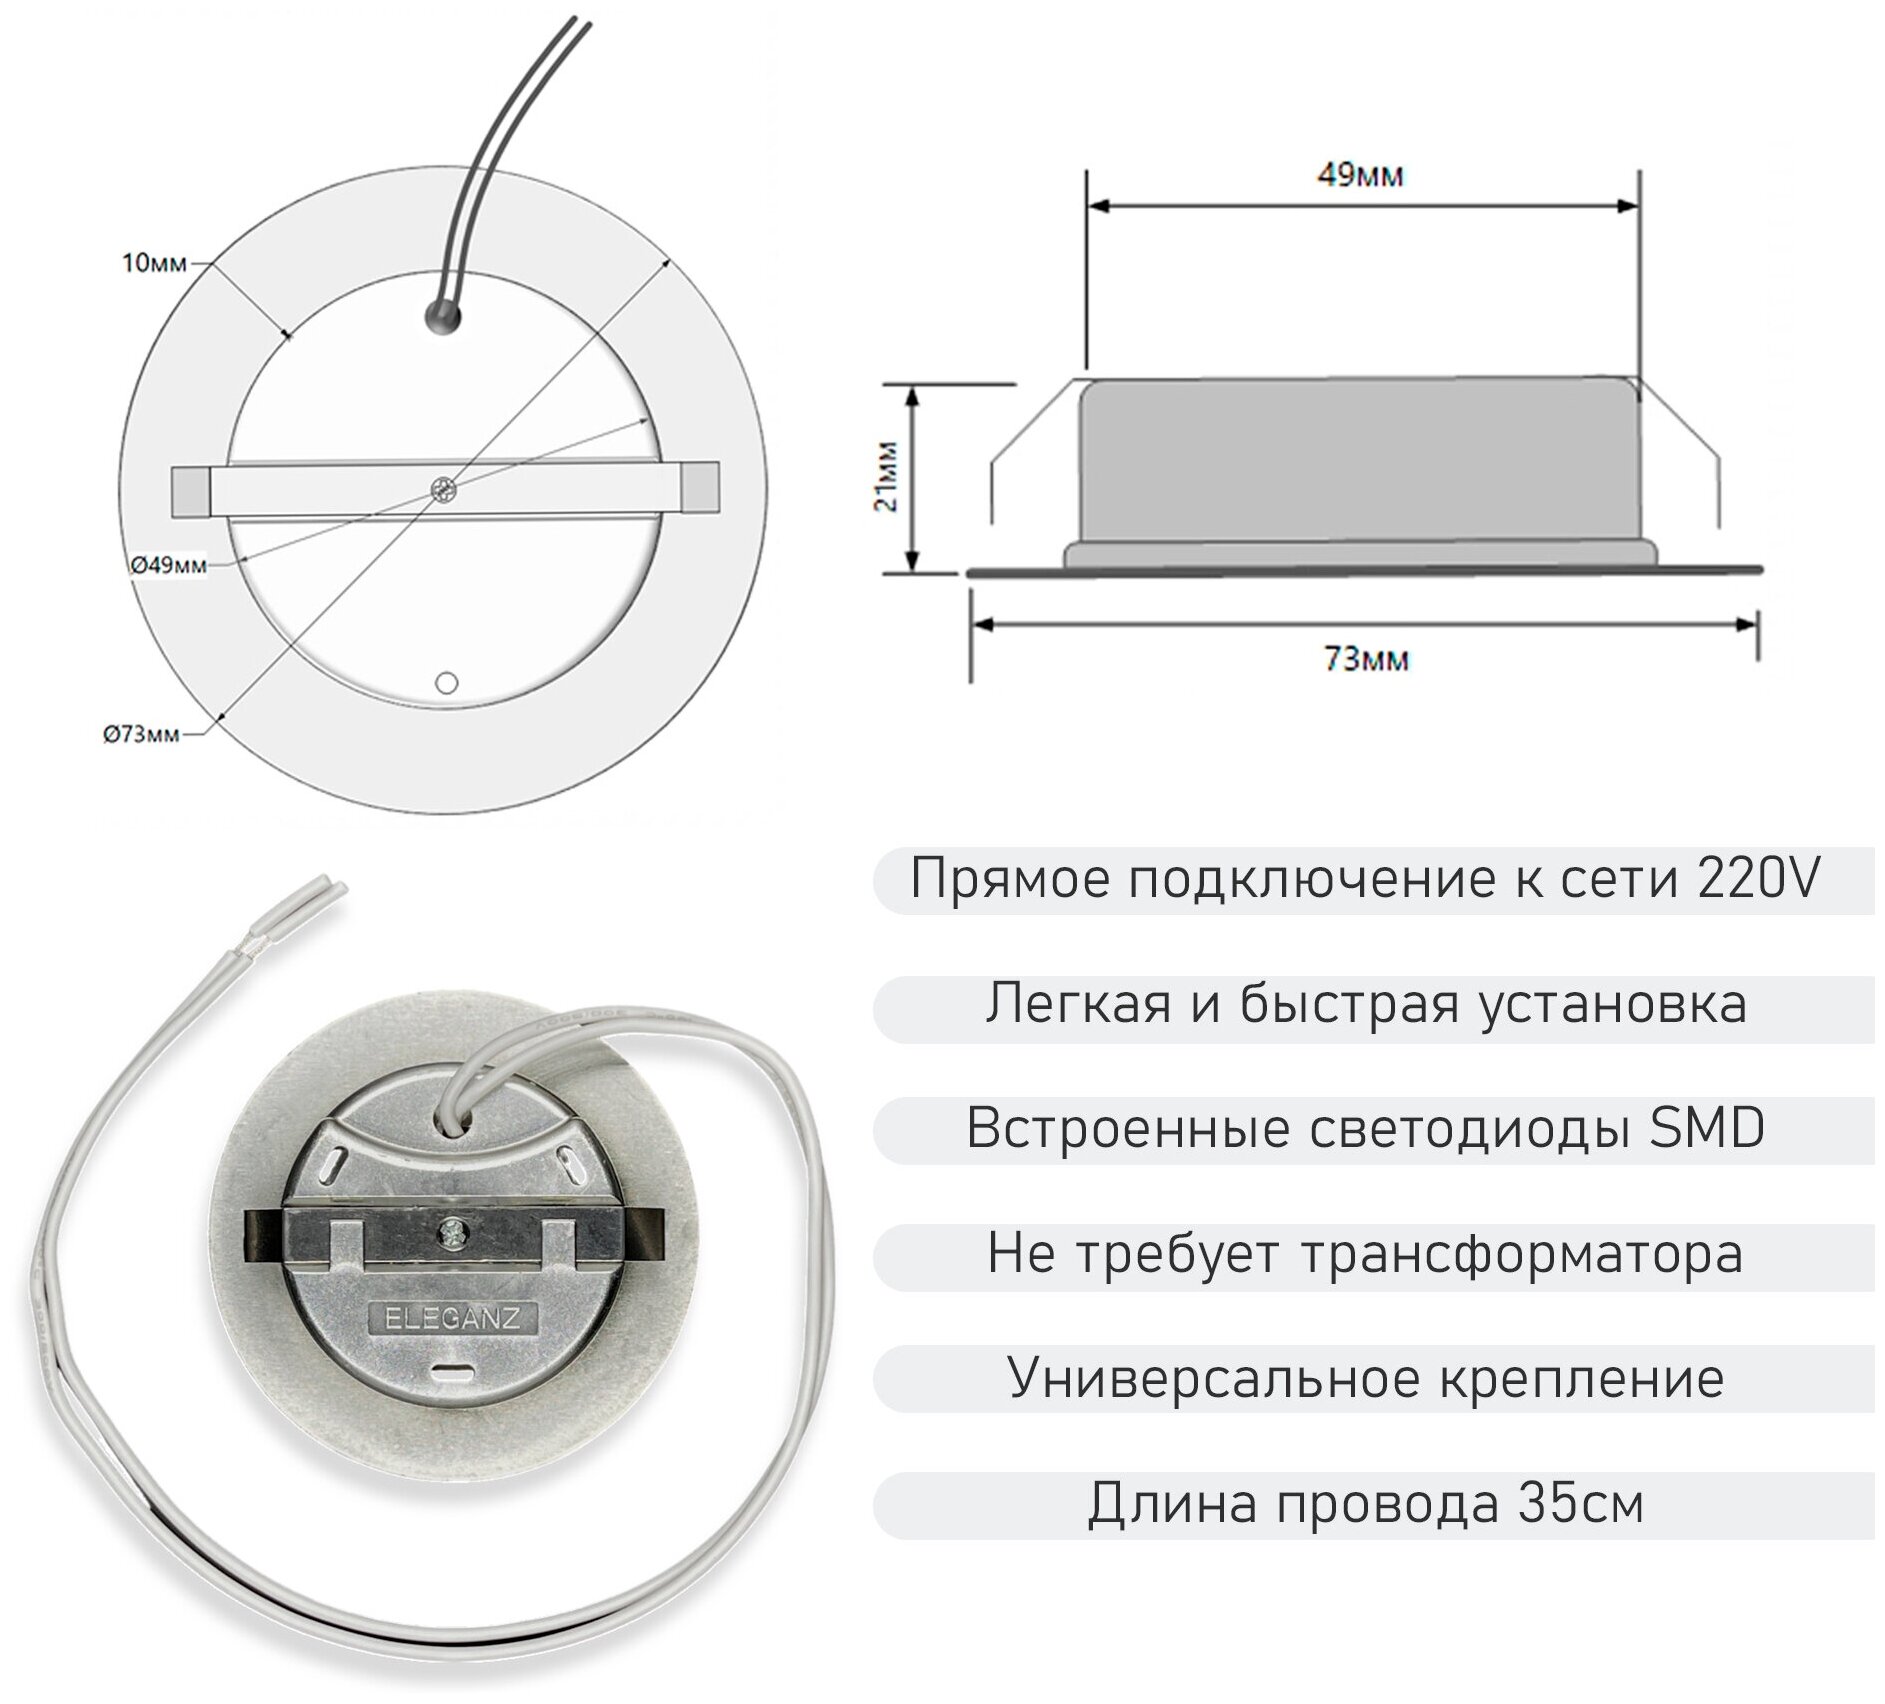 Мебельный светодиодный встраиваемый светильник Eleganz Chrome термопластиковый 4W 220V 4500K IP20 Комплект из 2 штук